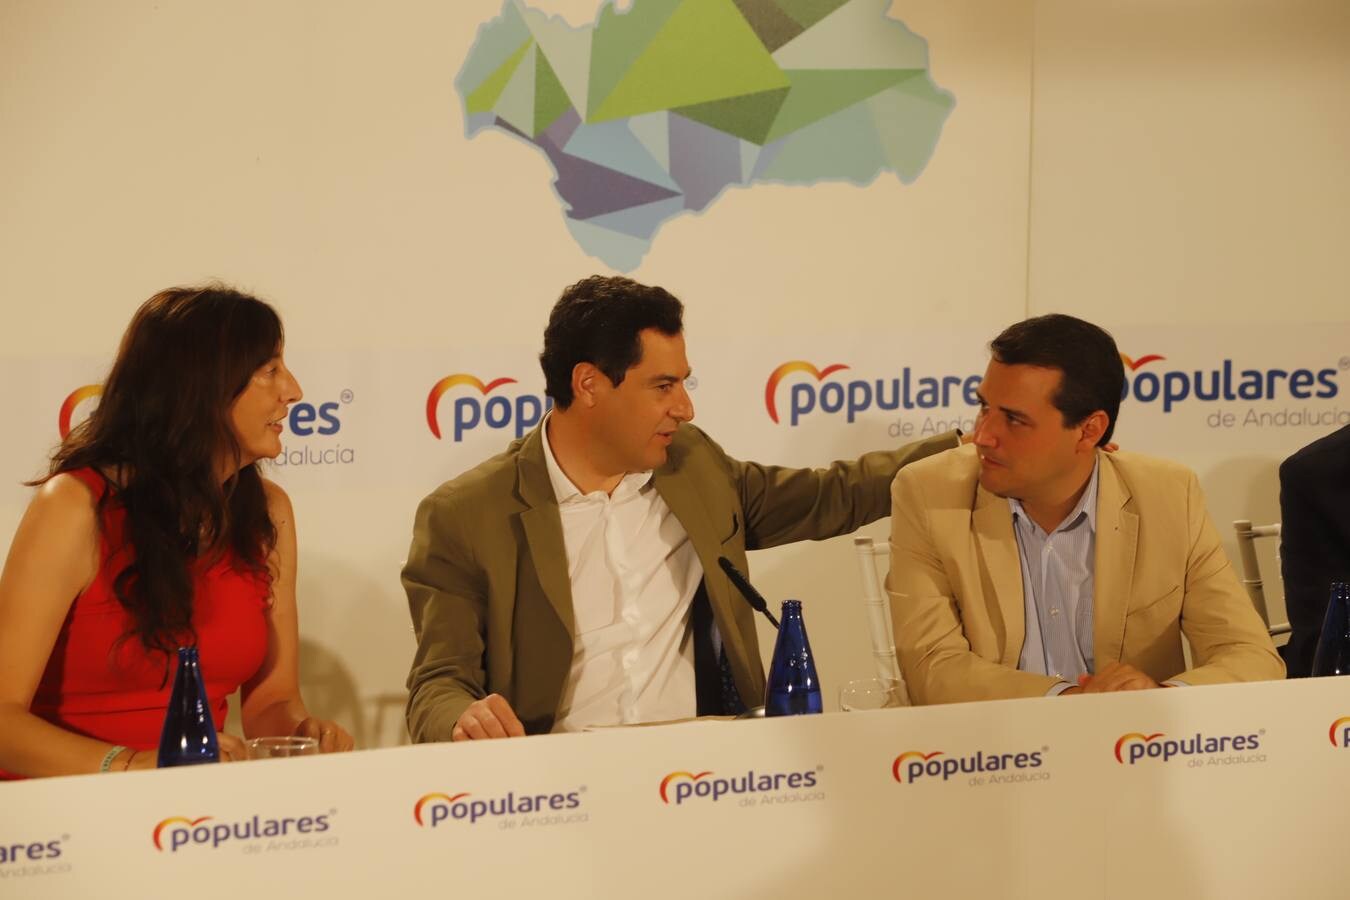 El Consejo Andaluz de Alcaldes del PP en Córdoba, en imágenes